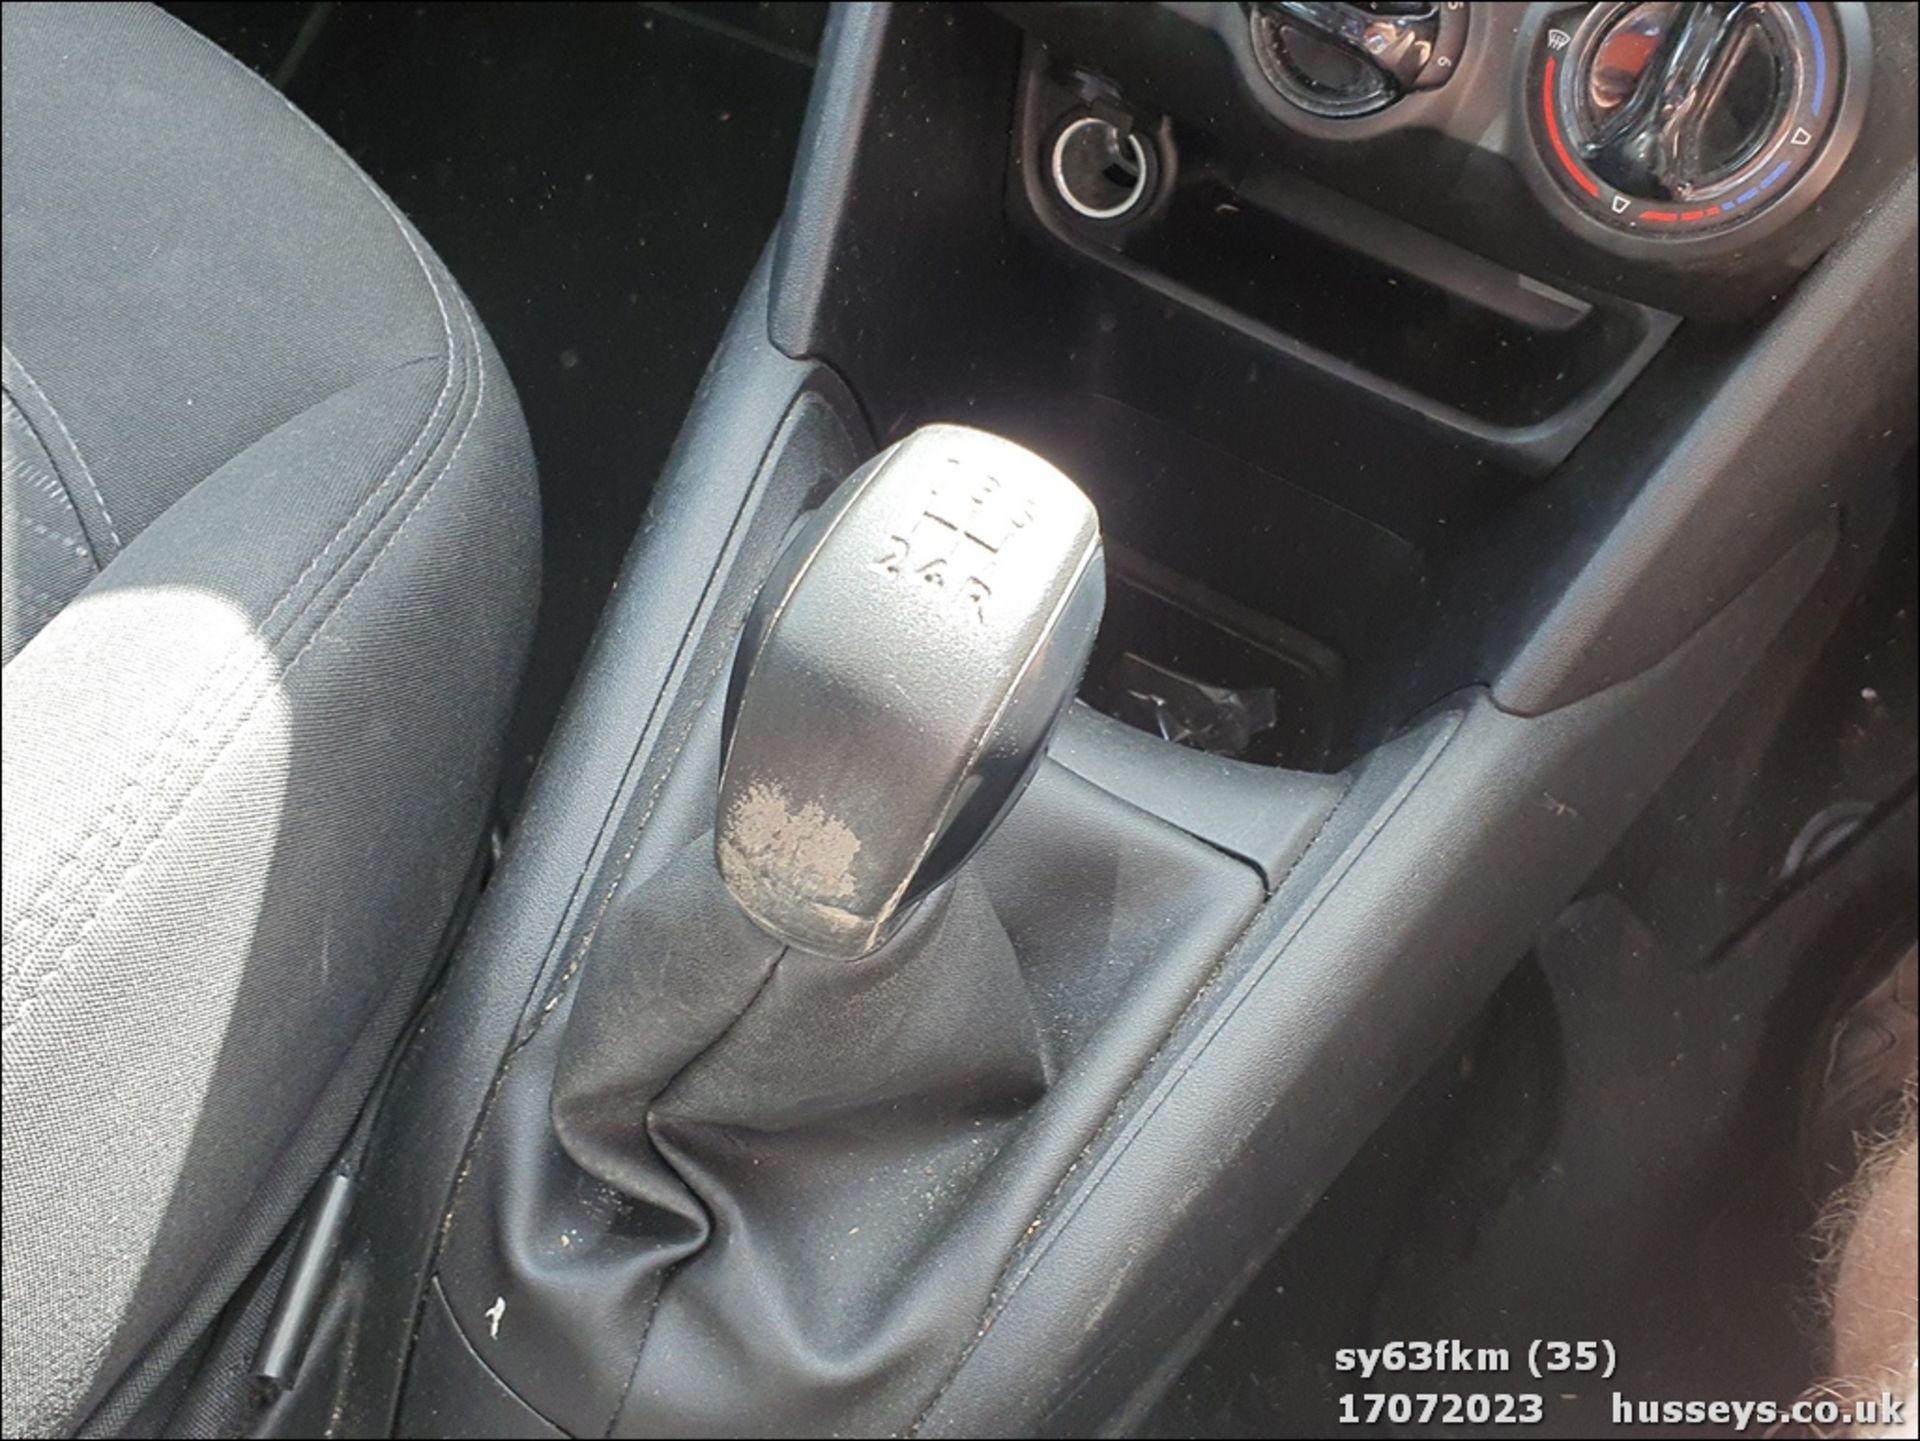 13/63 PEUGEOT 208 ACCESS PLUS - 1199cc 5dr Hatchback (Silver) - Image 36 of 59